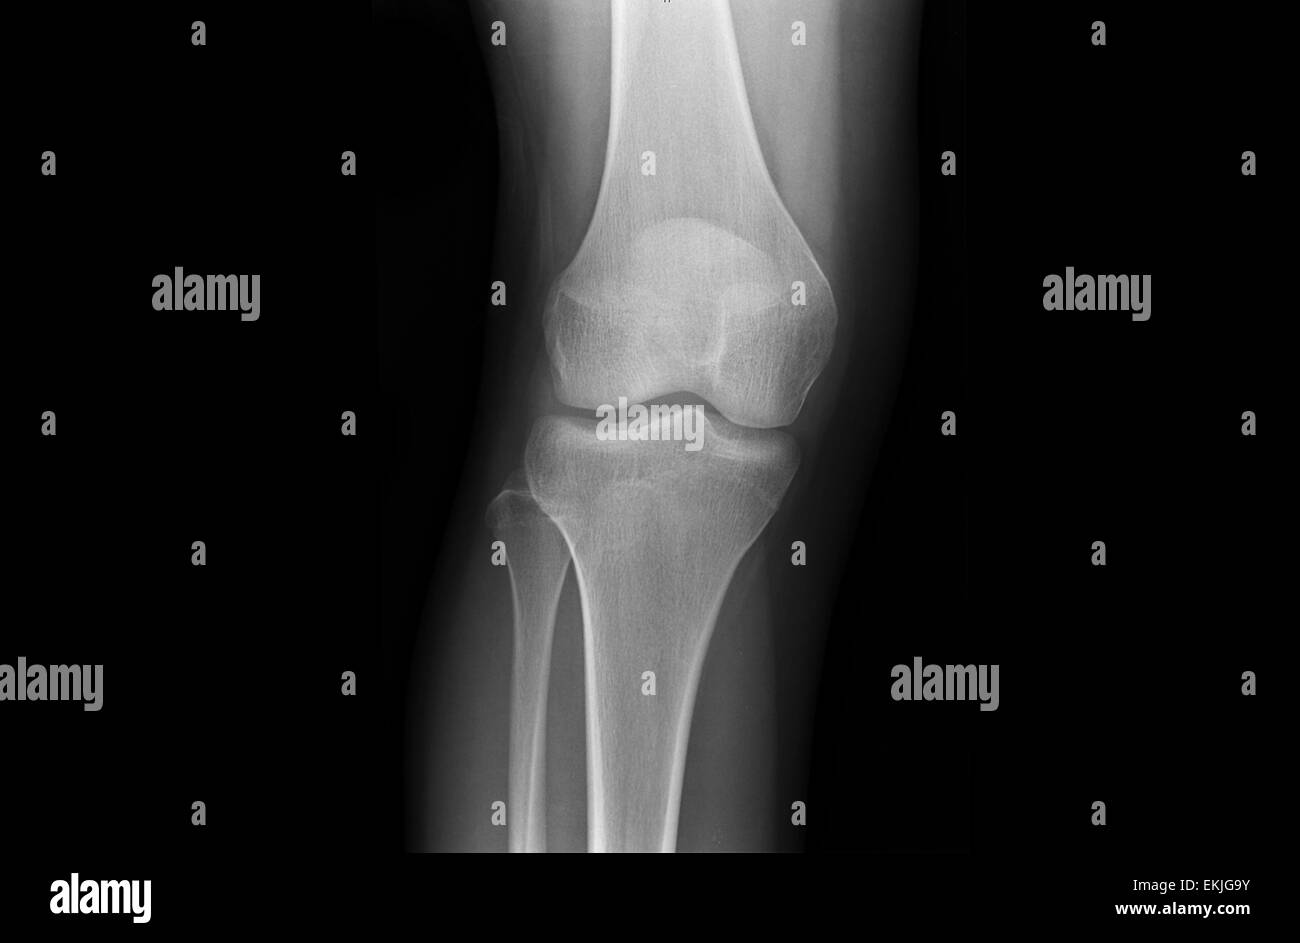 Kniegelenke eines Jugendlichen über x-ray Stockfoto